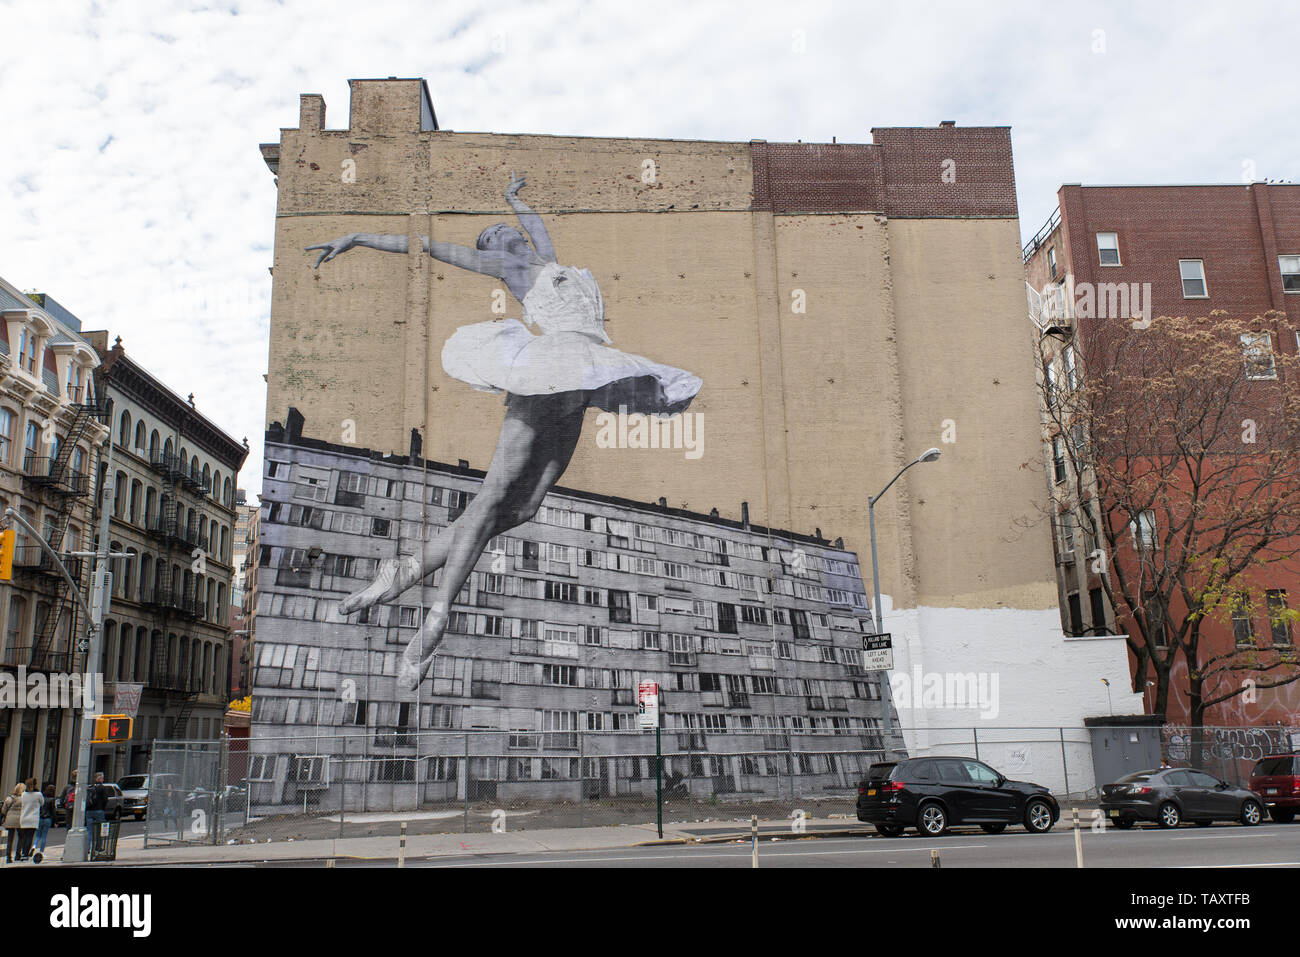 Wandgemälde des französischen Künstlers J.R. in Manhattan, New York, USA./ Mural by French artist J.R in Manhattan, New York, USA. Stock Photo